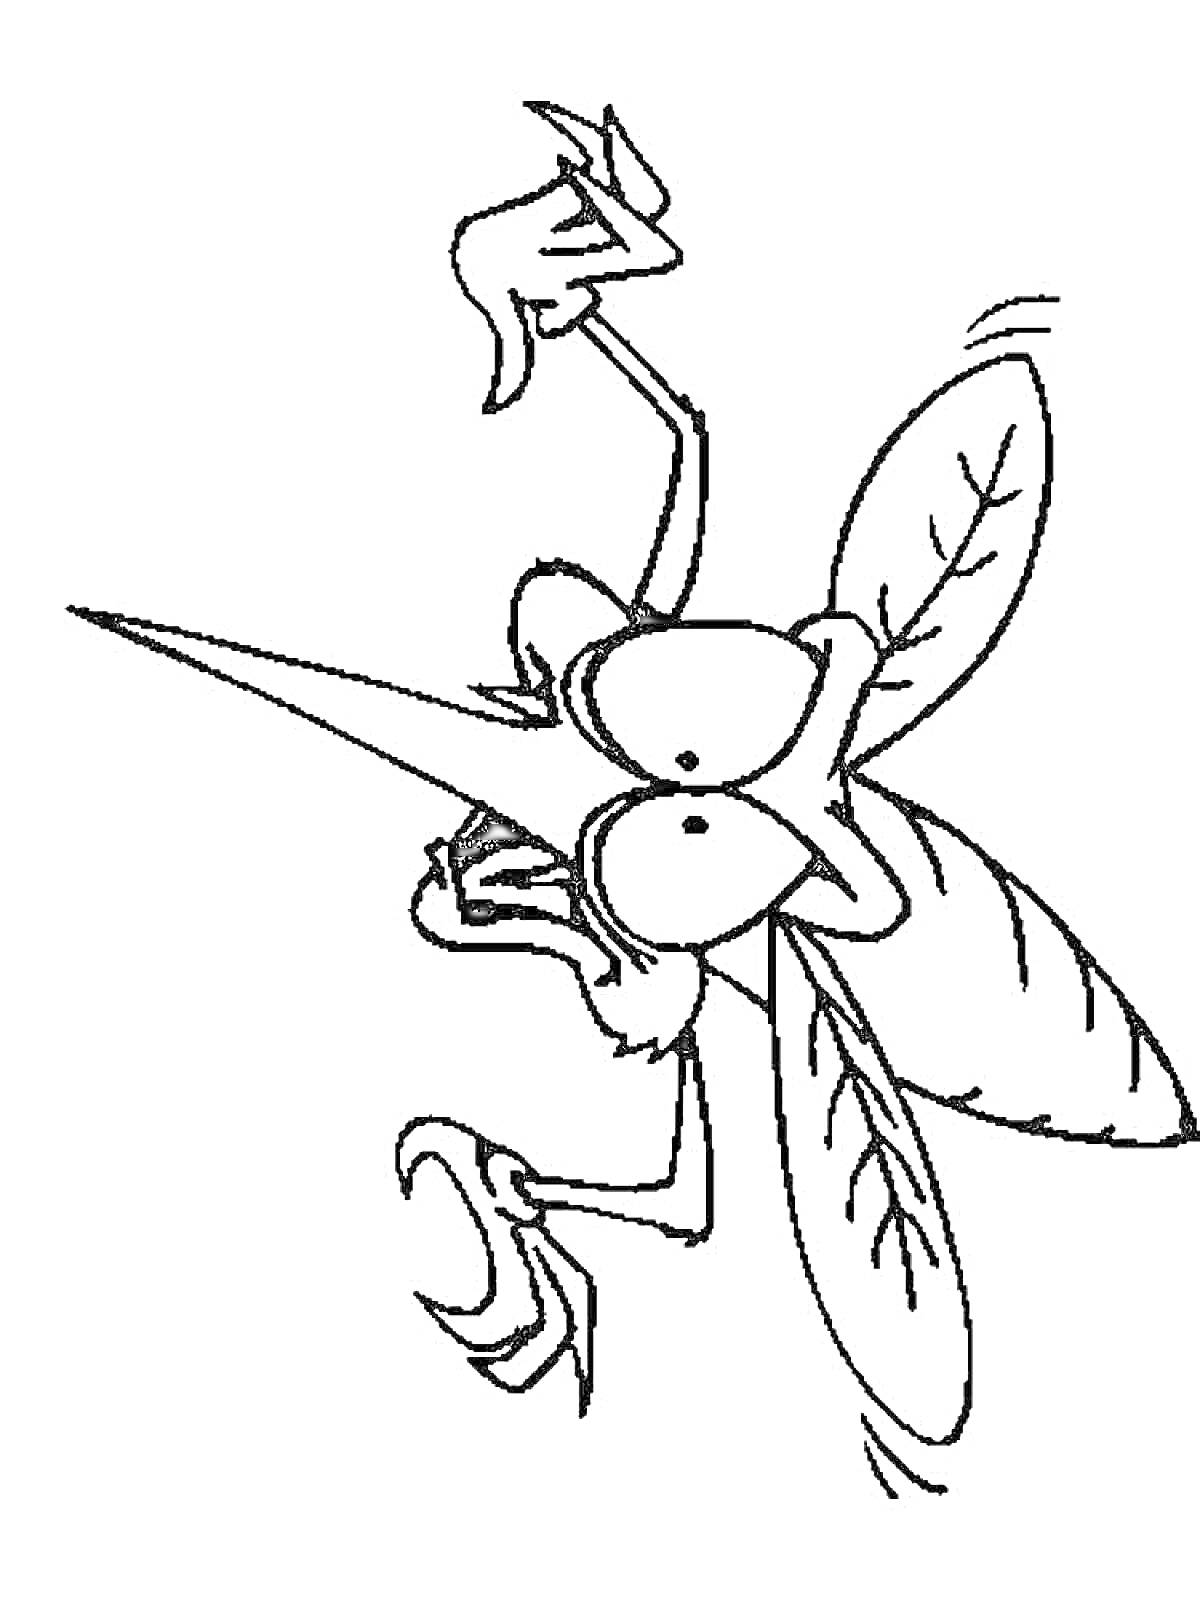 Раскраска Комар с длинным хоботком, большими глазами и лапками, сложенными перед телом